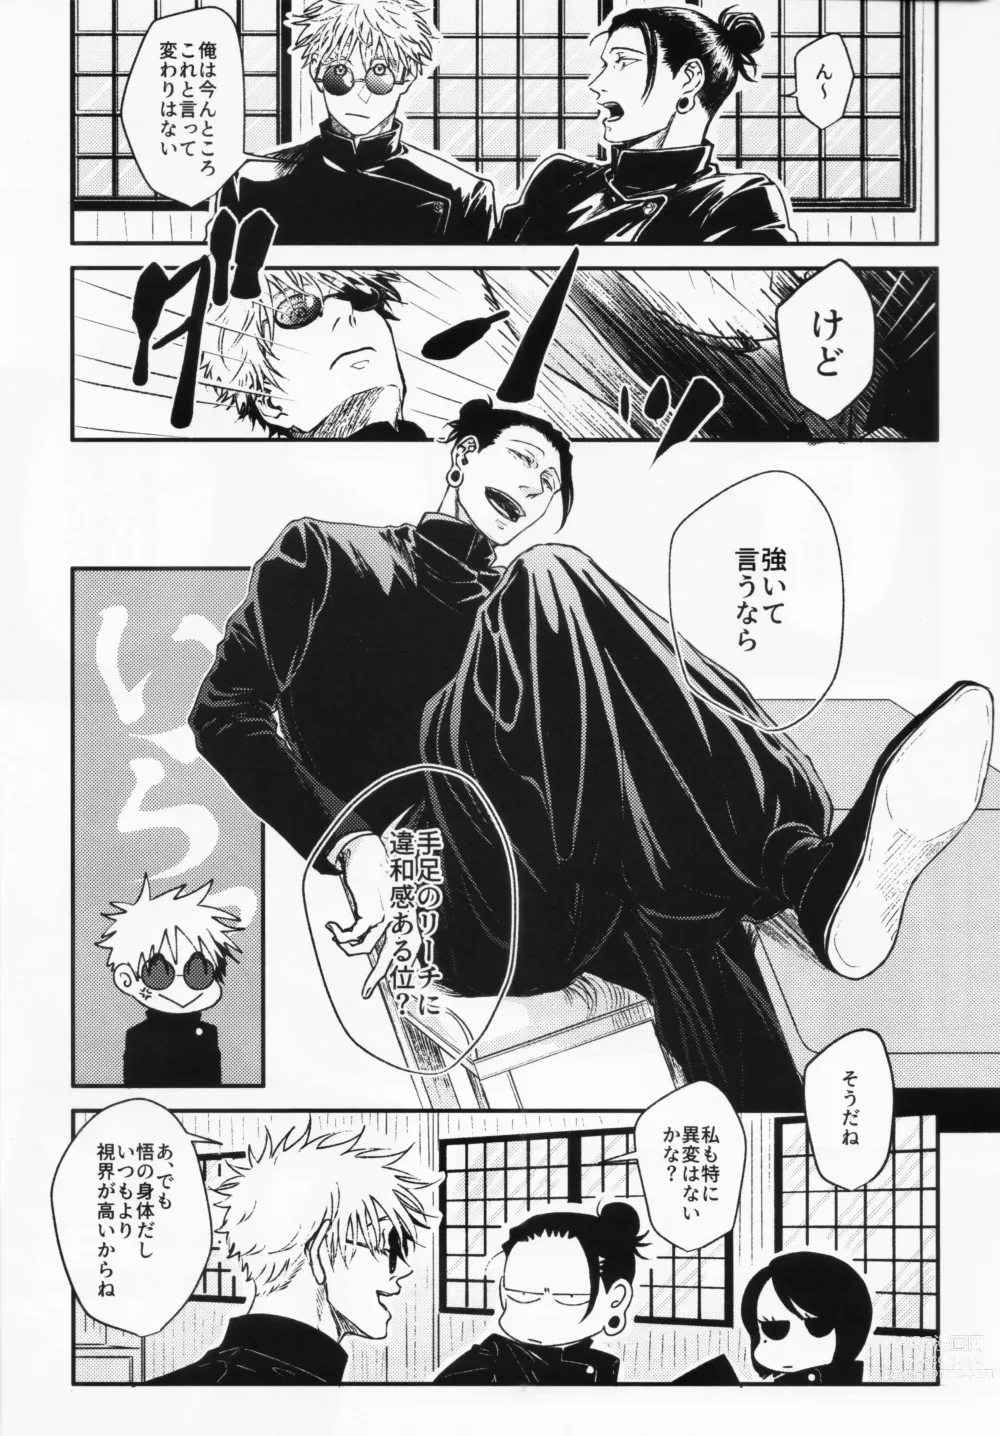 Page 6 of doujinshi Surussho.